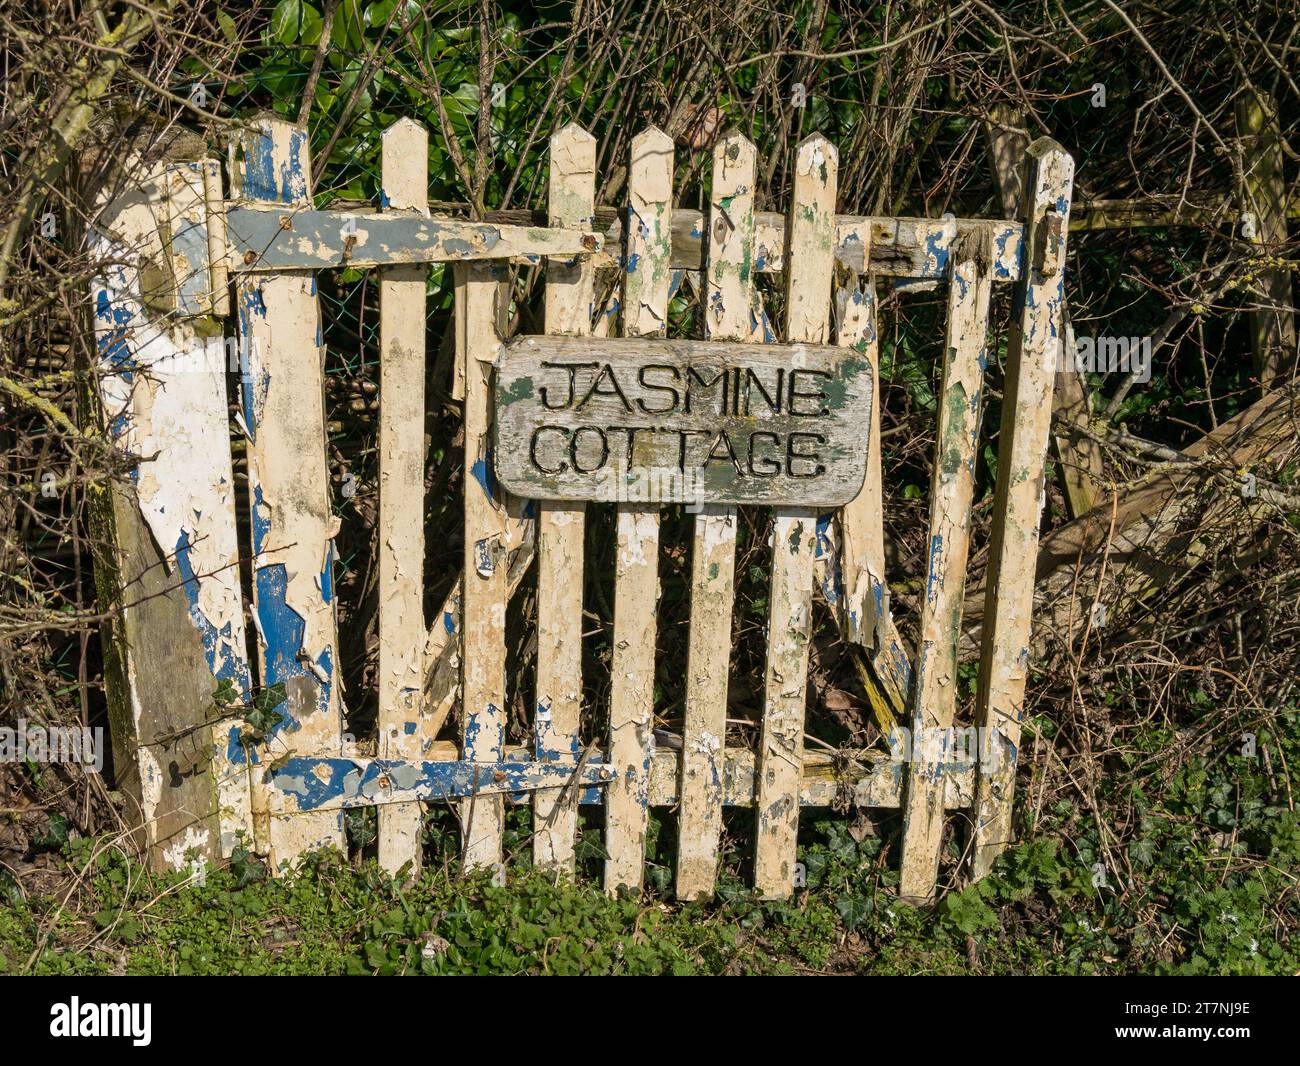 Vecchio cancello del giardino in legno per il "Jasmine Cottage" con vernice peeling e legname marcio, Wyfordby, Leicestershire, Inghilterra, Regno Unito Foto Stock